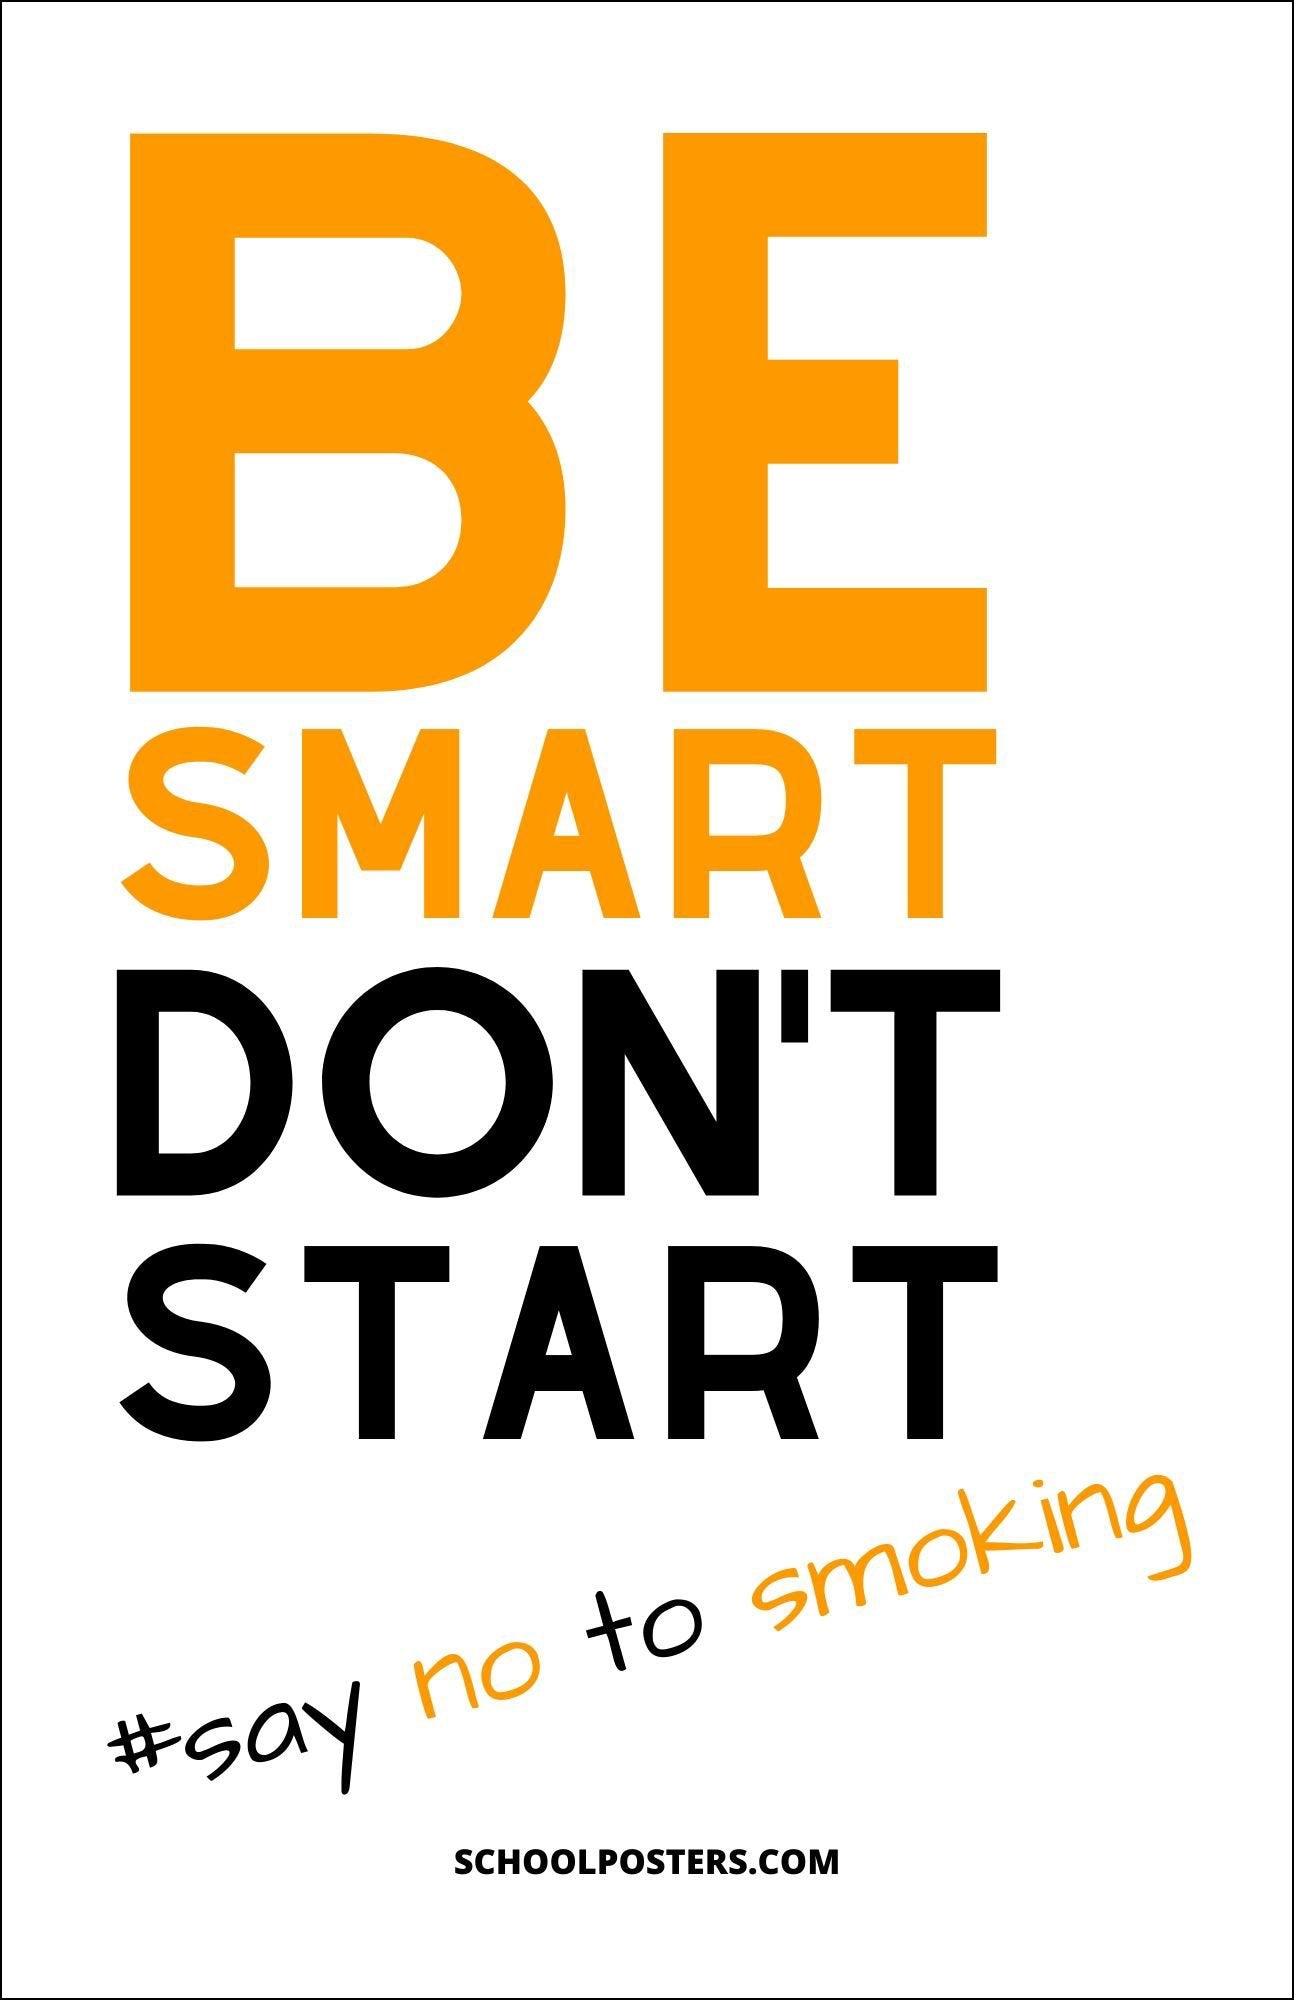 Be Smart Don't Start Smoking Poster